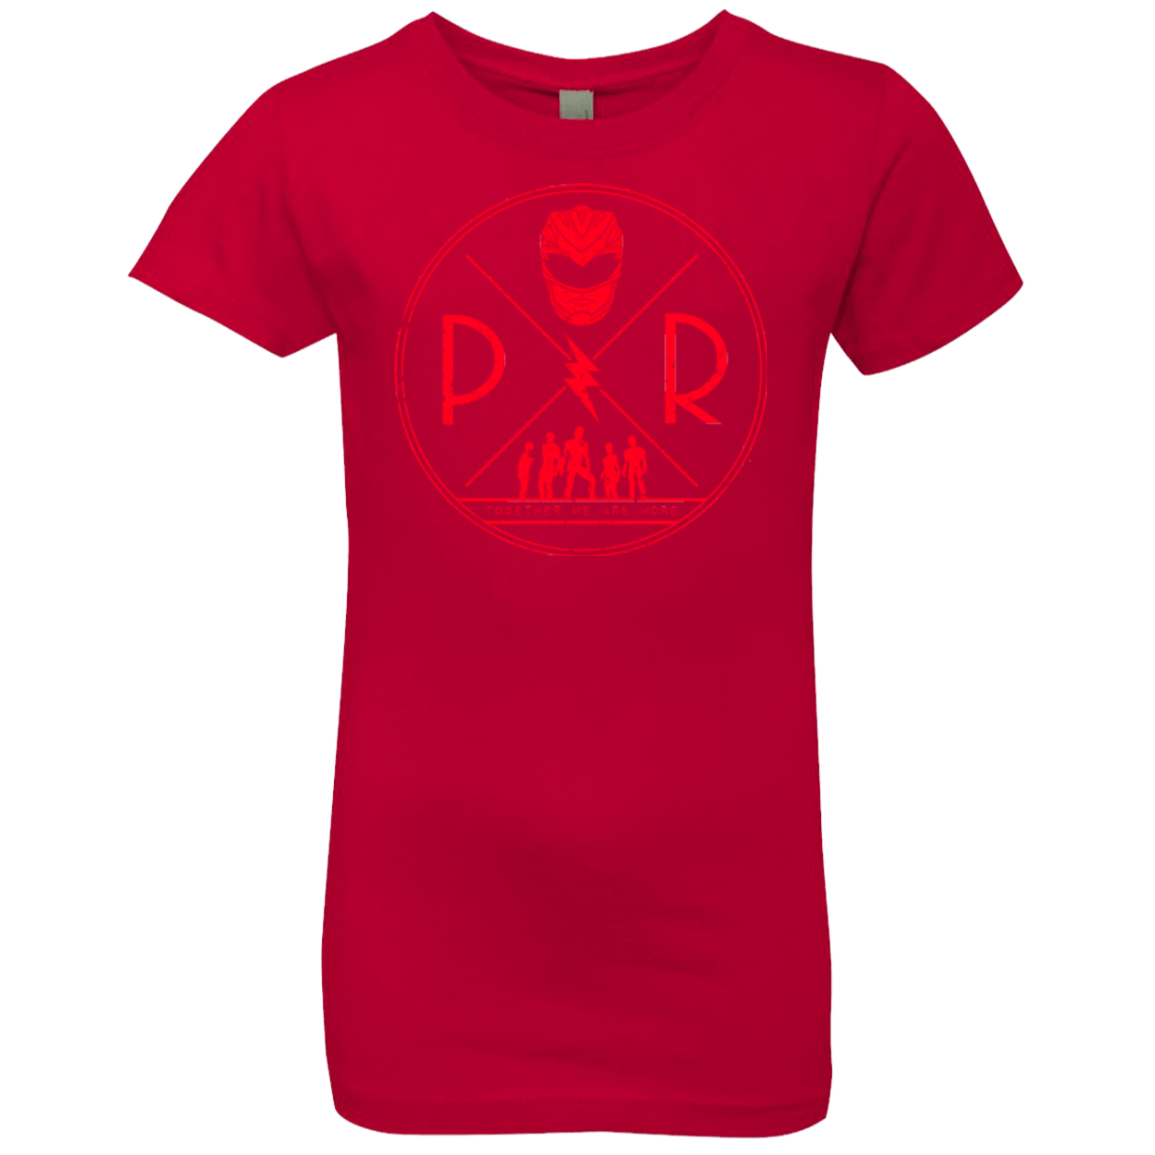 Red Power Girls Premium T-Shirt